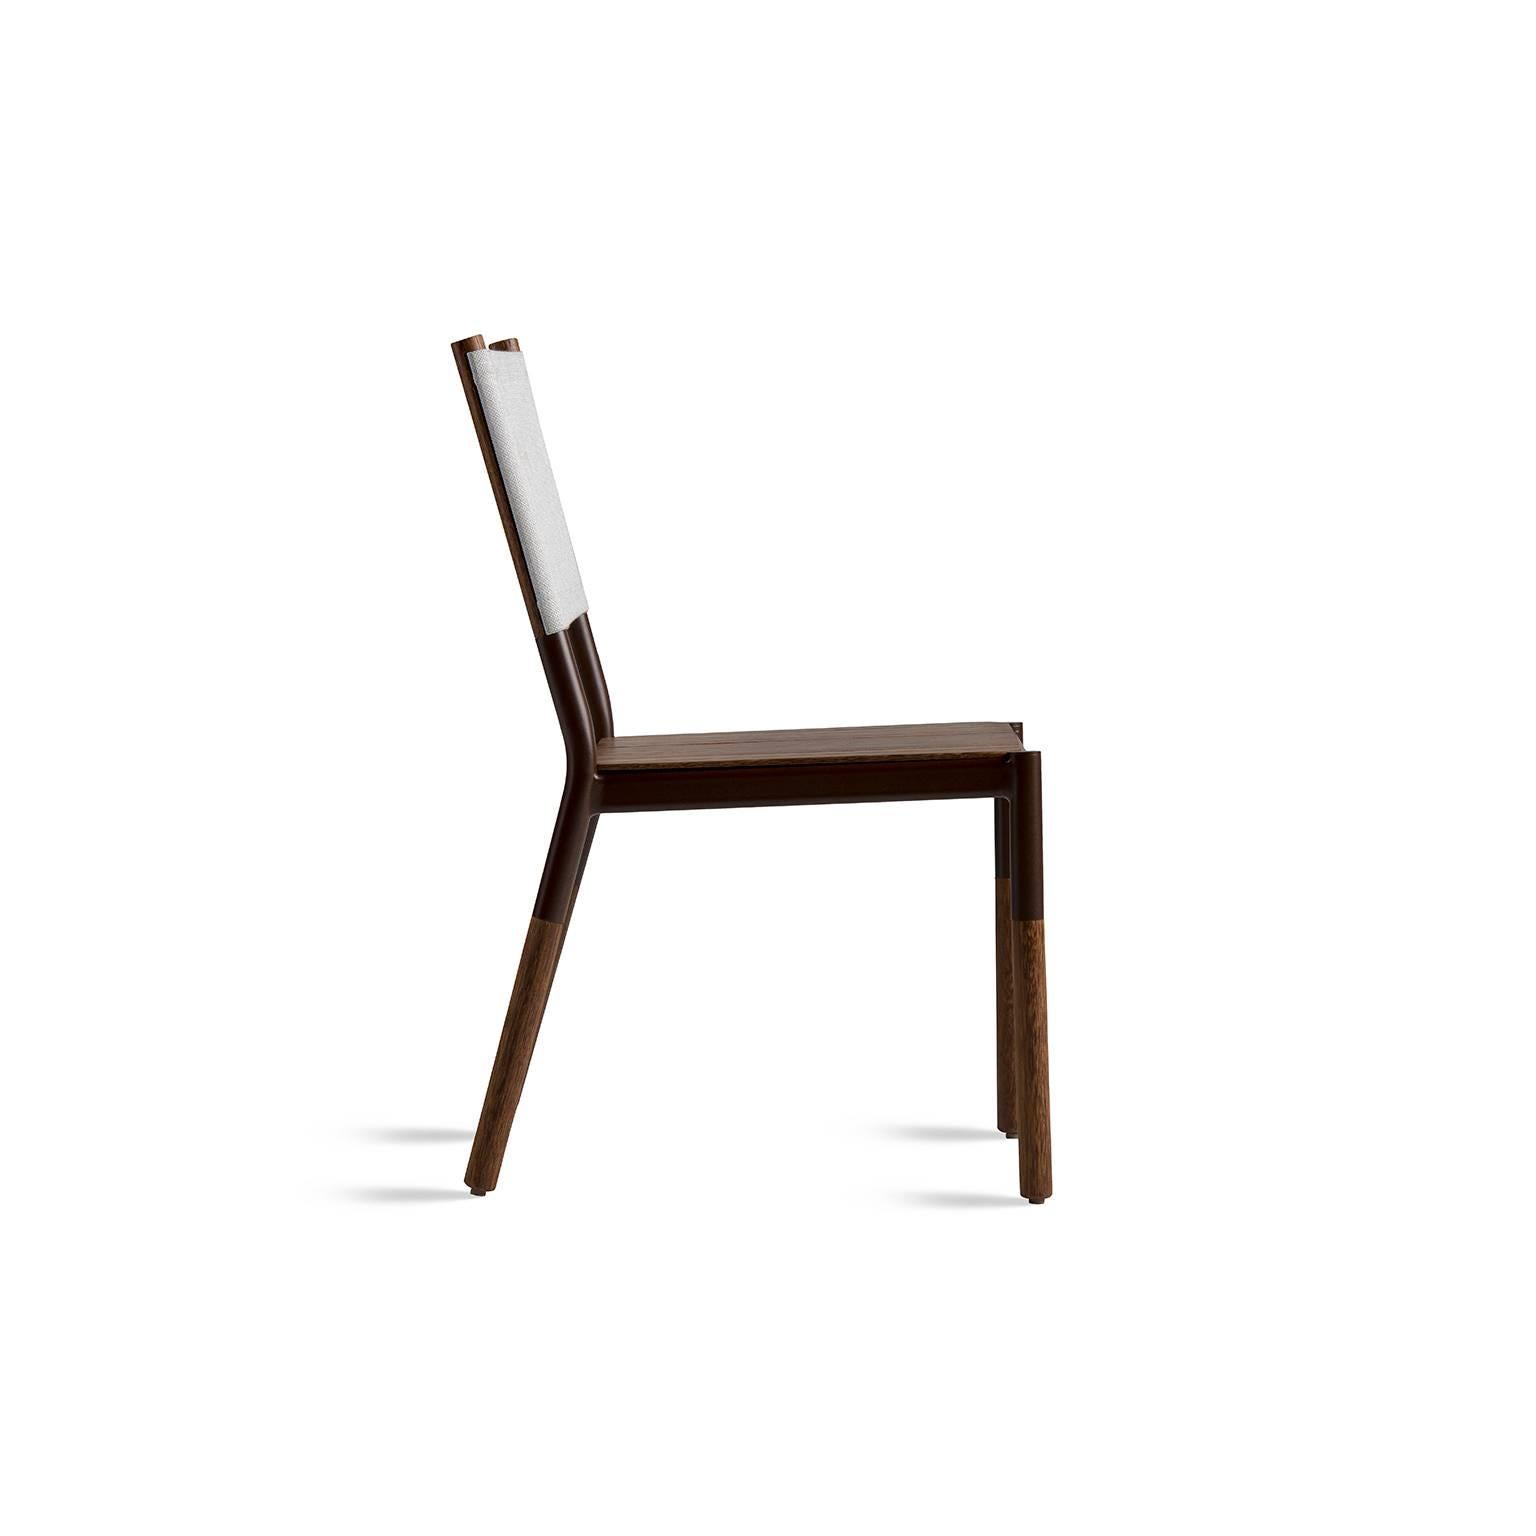 Dieser minimalistische Stuhl ist aus Massivholz, Metall und Stoffen gefertigt und für den Außenbereich geeignet. Die Multi-Finish-Struktur des Stuhls wird mit Outdoor-Stoffen wie Batyline zu einer interessanten Outdoor-Lösung kombiniert. Unten das